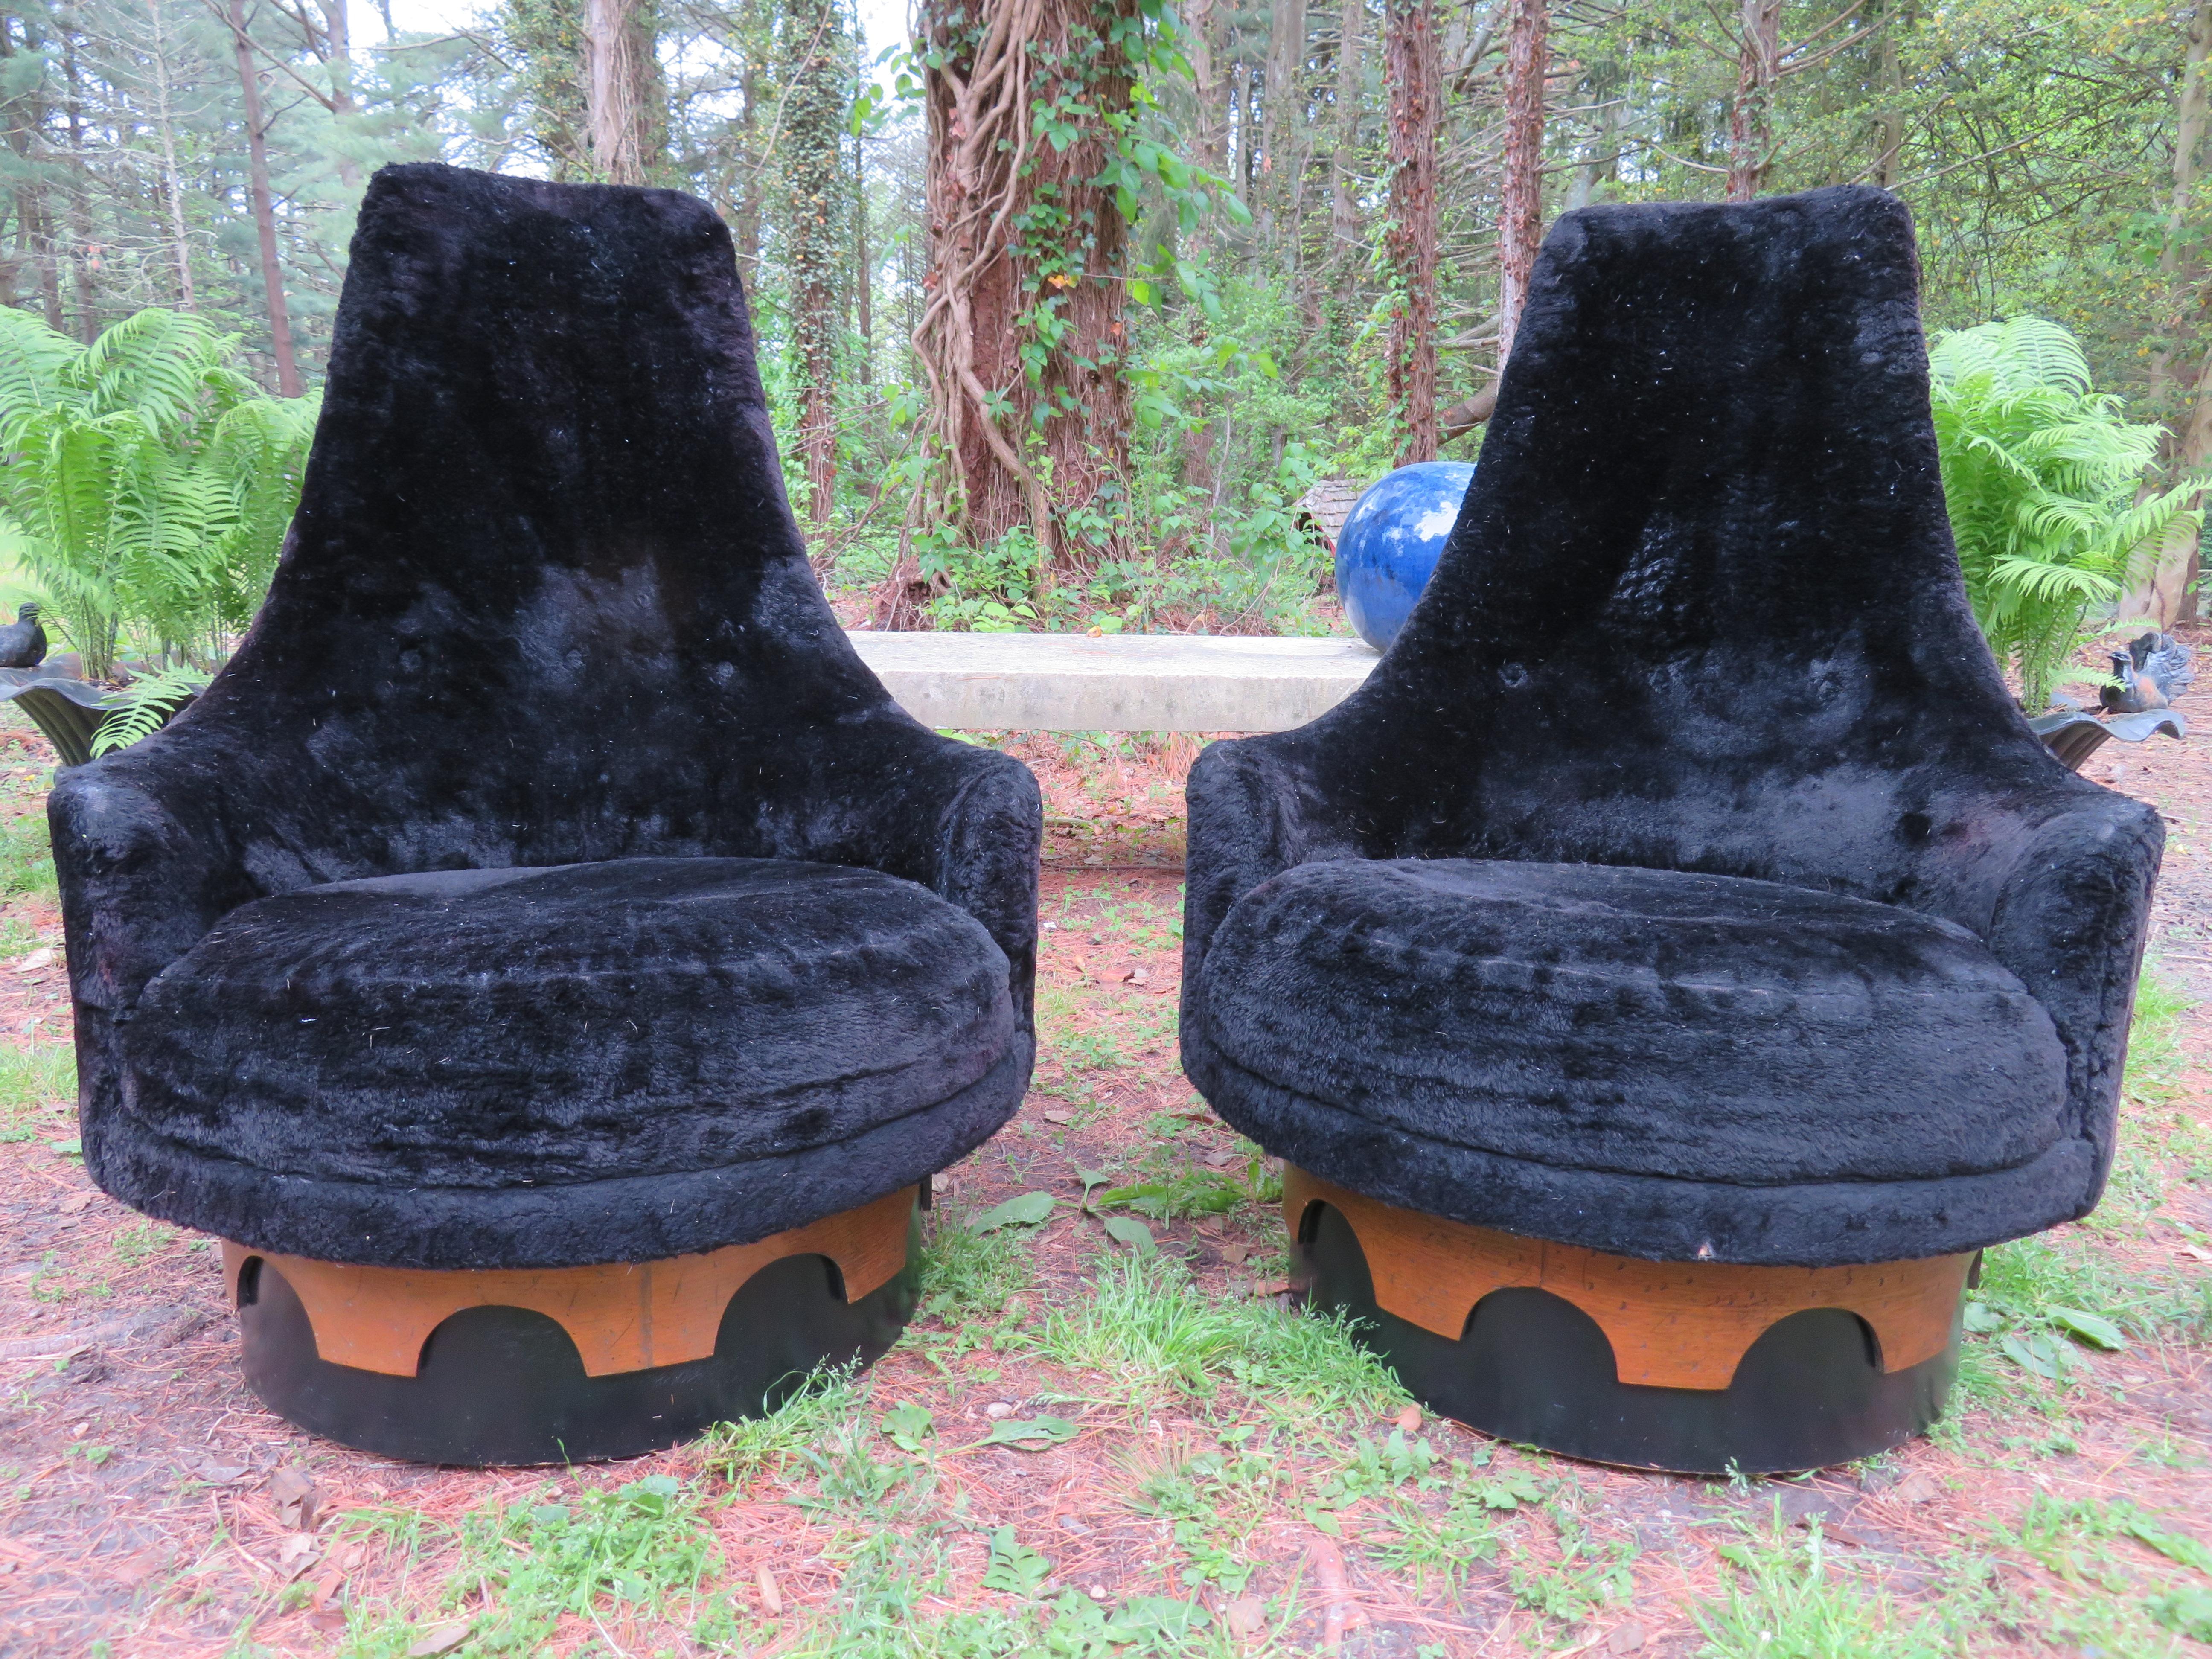 Fantastisches Paar Adrian Pearsall hohe Rückenlehne Dreh König Stühle. Dieses Paar behält seinen originalen schwarzen Fuzzy-Stoff in gutem Zustand - eine Neupolsterung wird empfohlen. Dies ist eines unserer Lieblingsdesigns von Mr. Pearsall - so